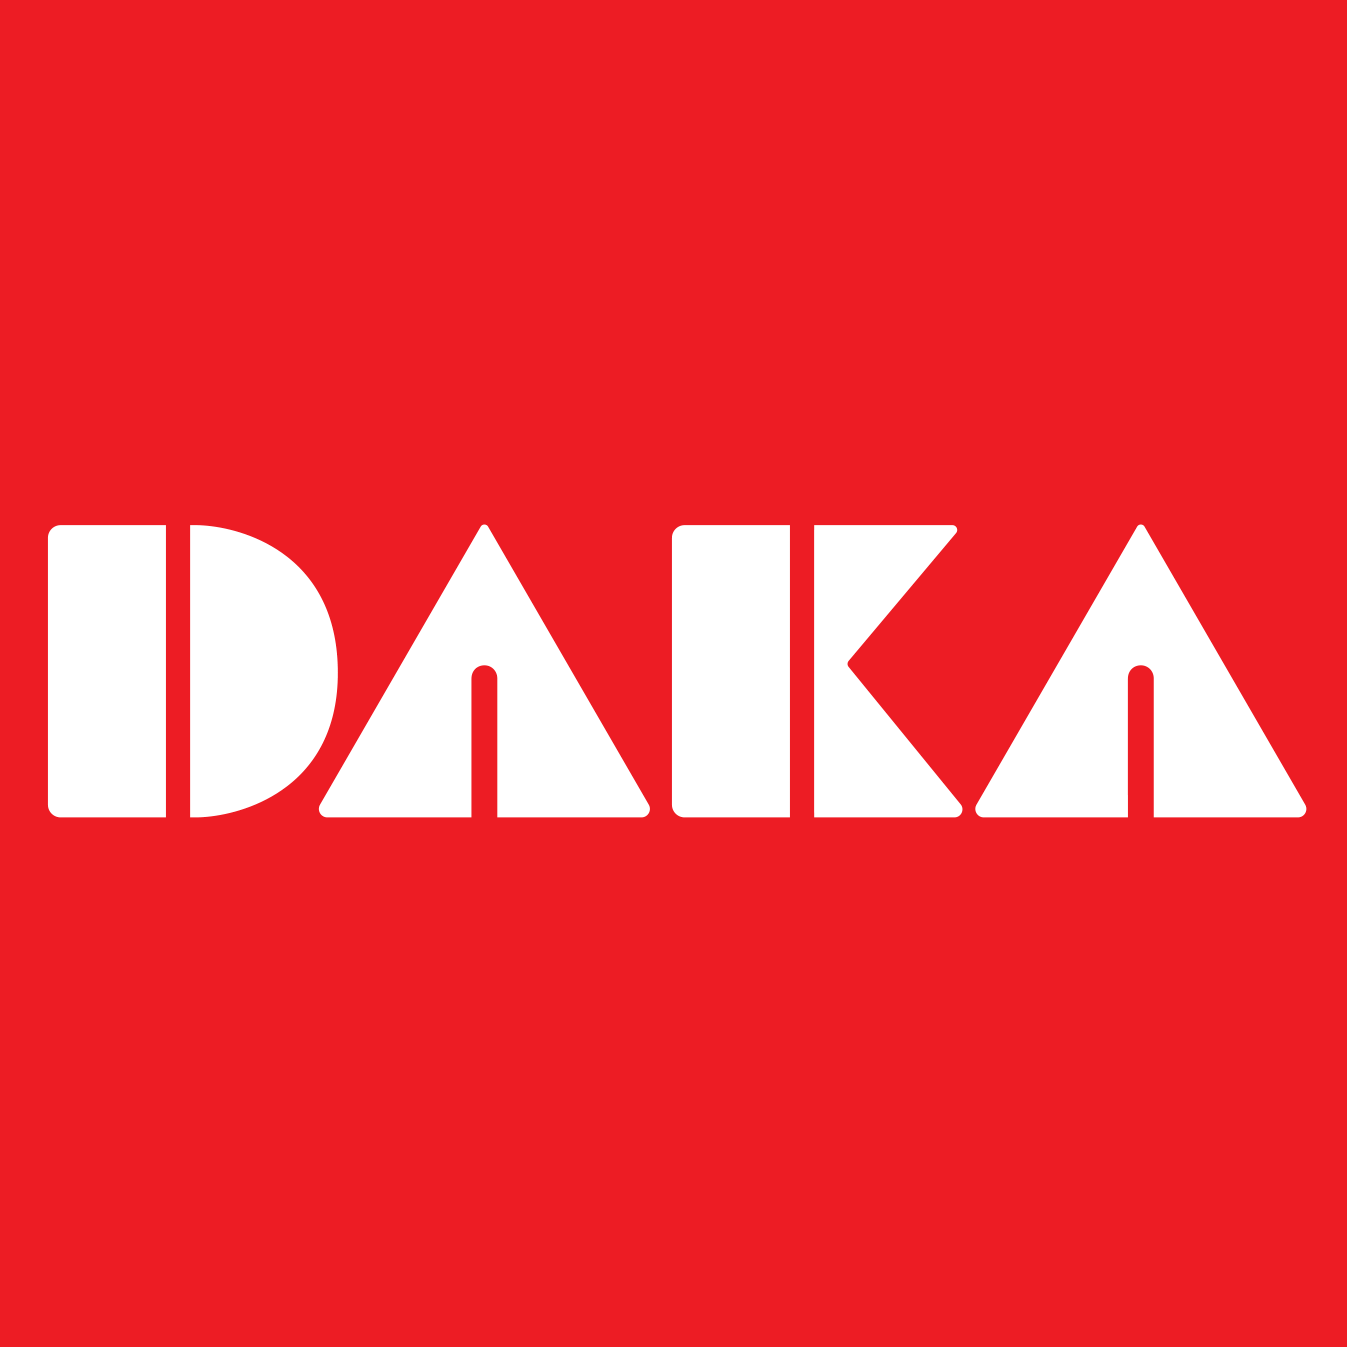 Daka.nl reviews, beoordelingen en ervaringen